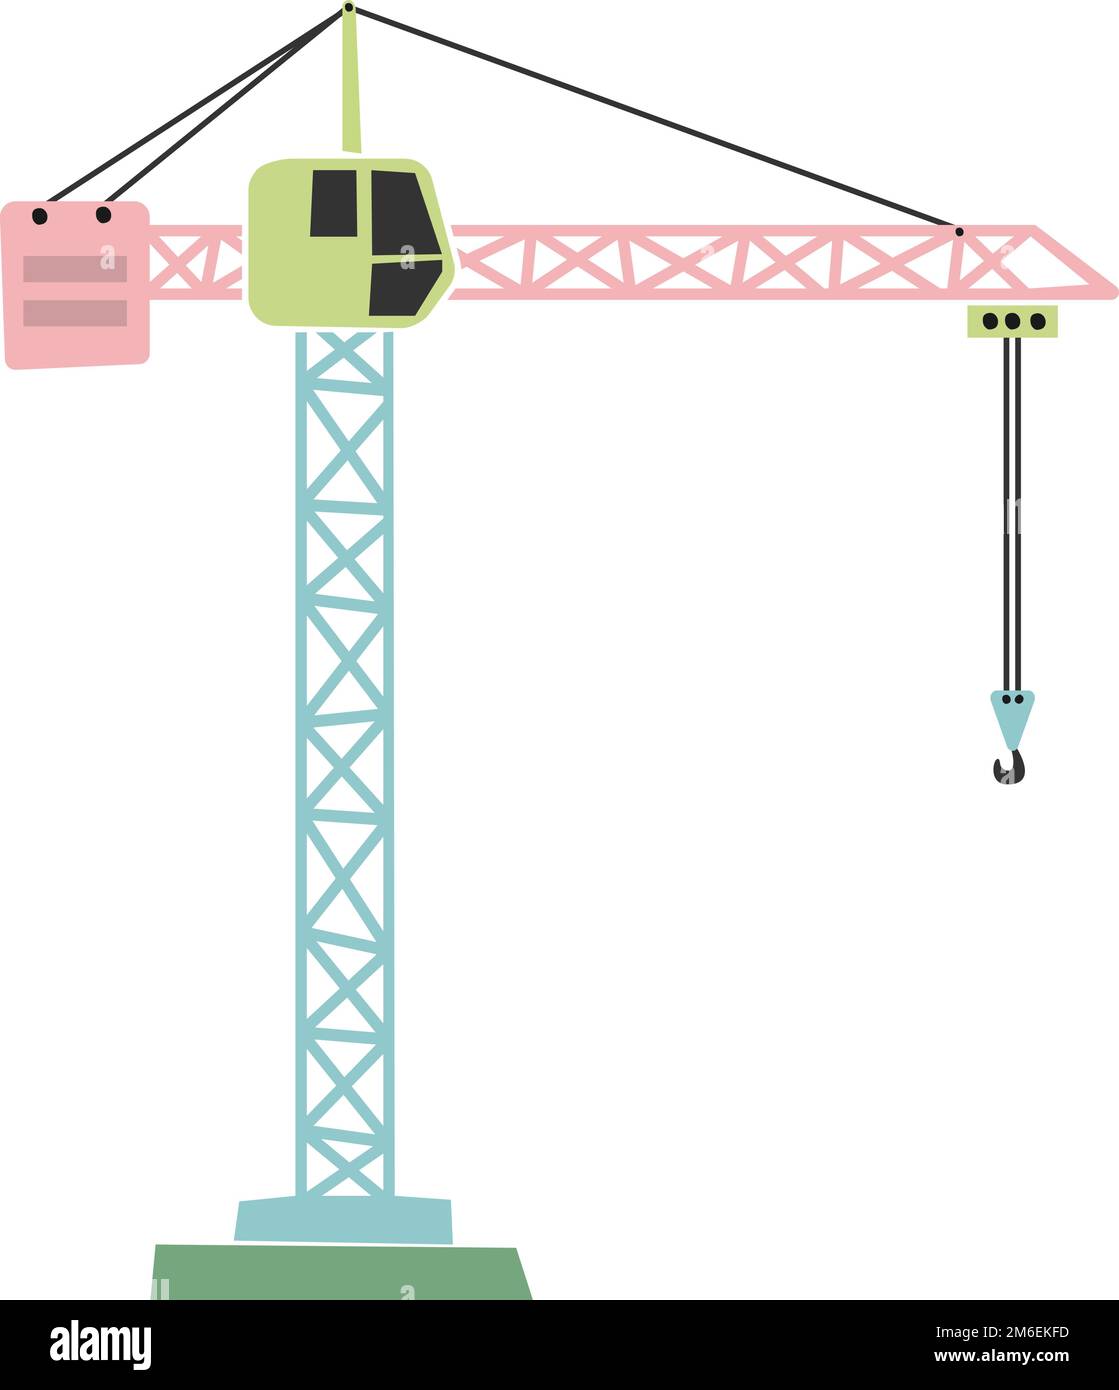 illustration vectorielle de machines de construction de type scandi pour enfants, grue à tour isolée sur fond blanc Illustration de Vecteur